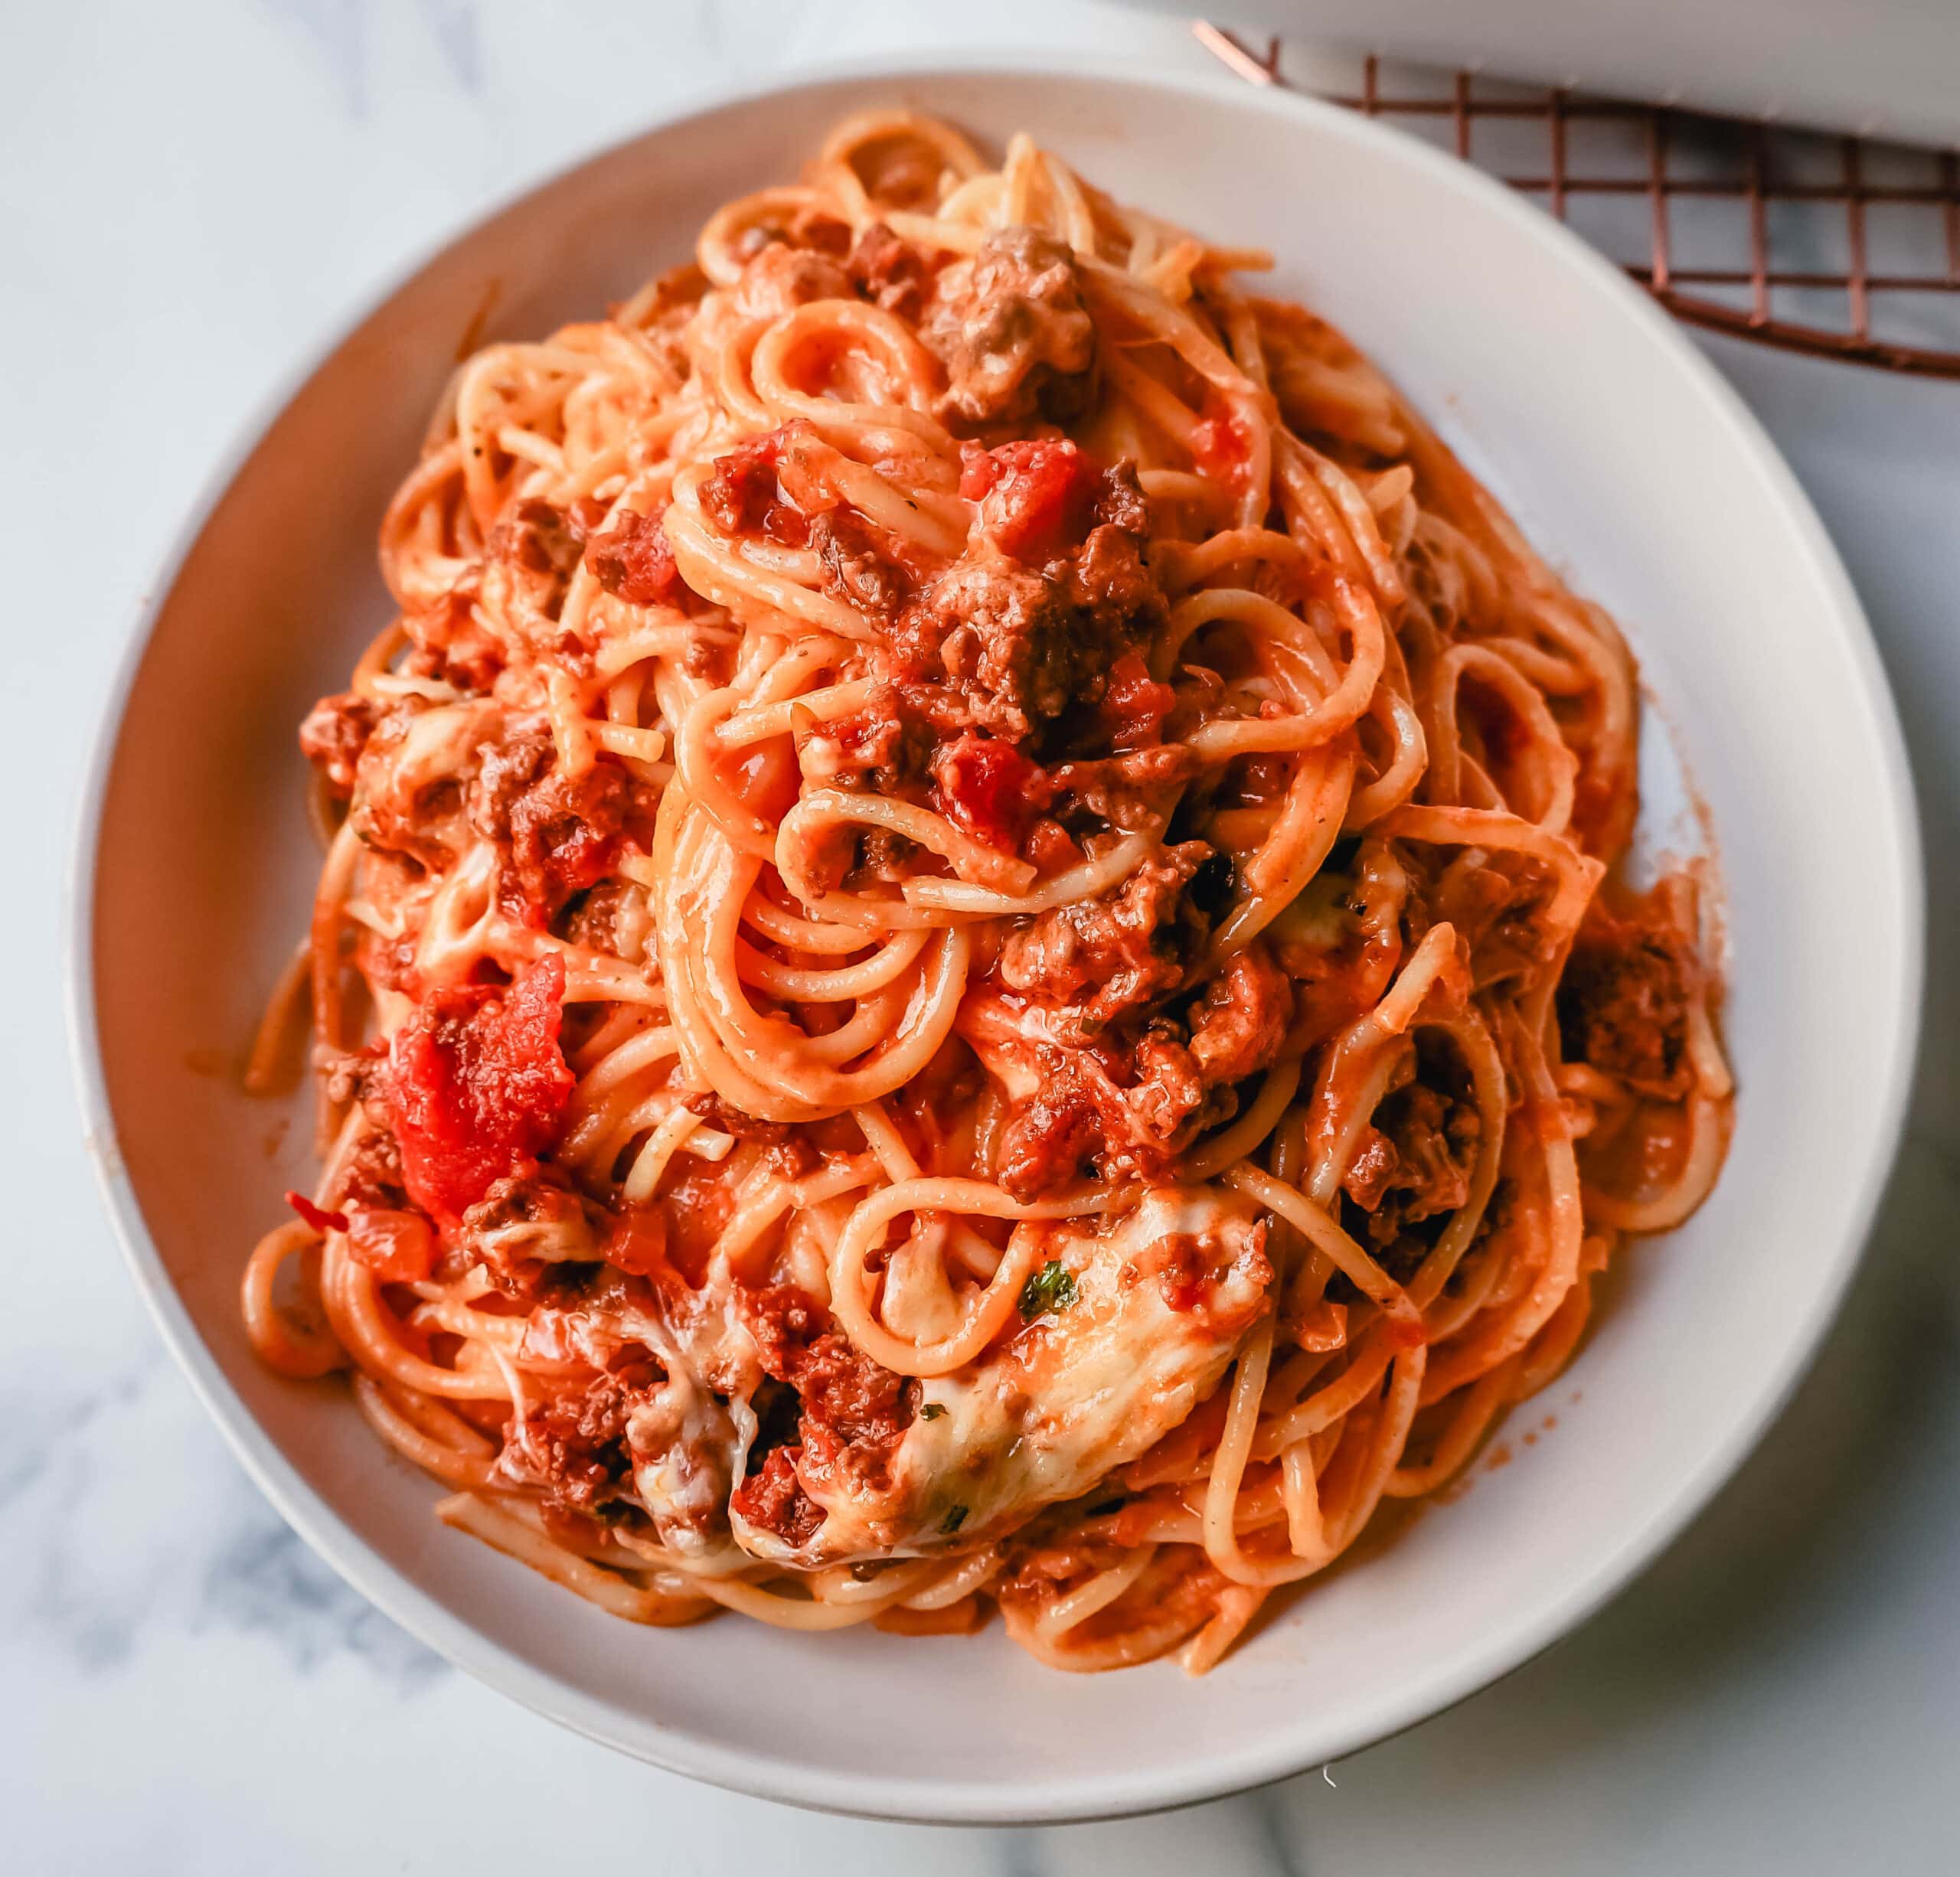 https://www.modernhoney.com/wp-content/uploads/2023/02/TikTok-Million-Dollar-Baked-Spaghetti-1-crop-scaled.jpg